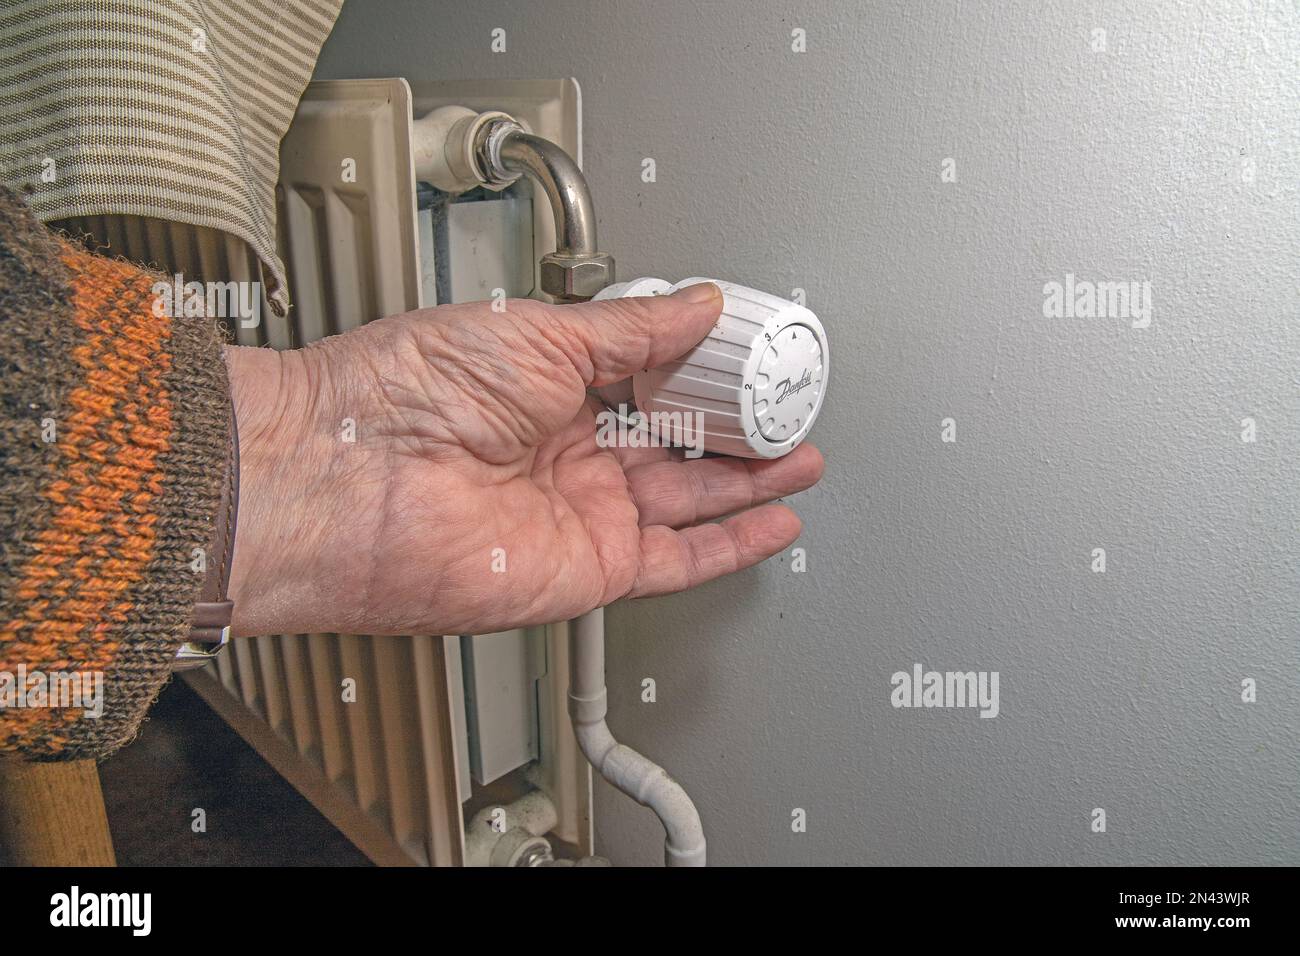 Gros plan de la main de la personne en utilisant le thermostat du radiateur, le radiateur et le thermostat à plat - chauffage Banque D'Images